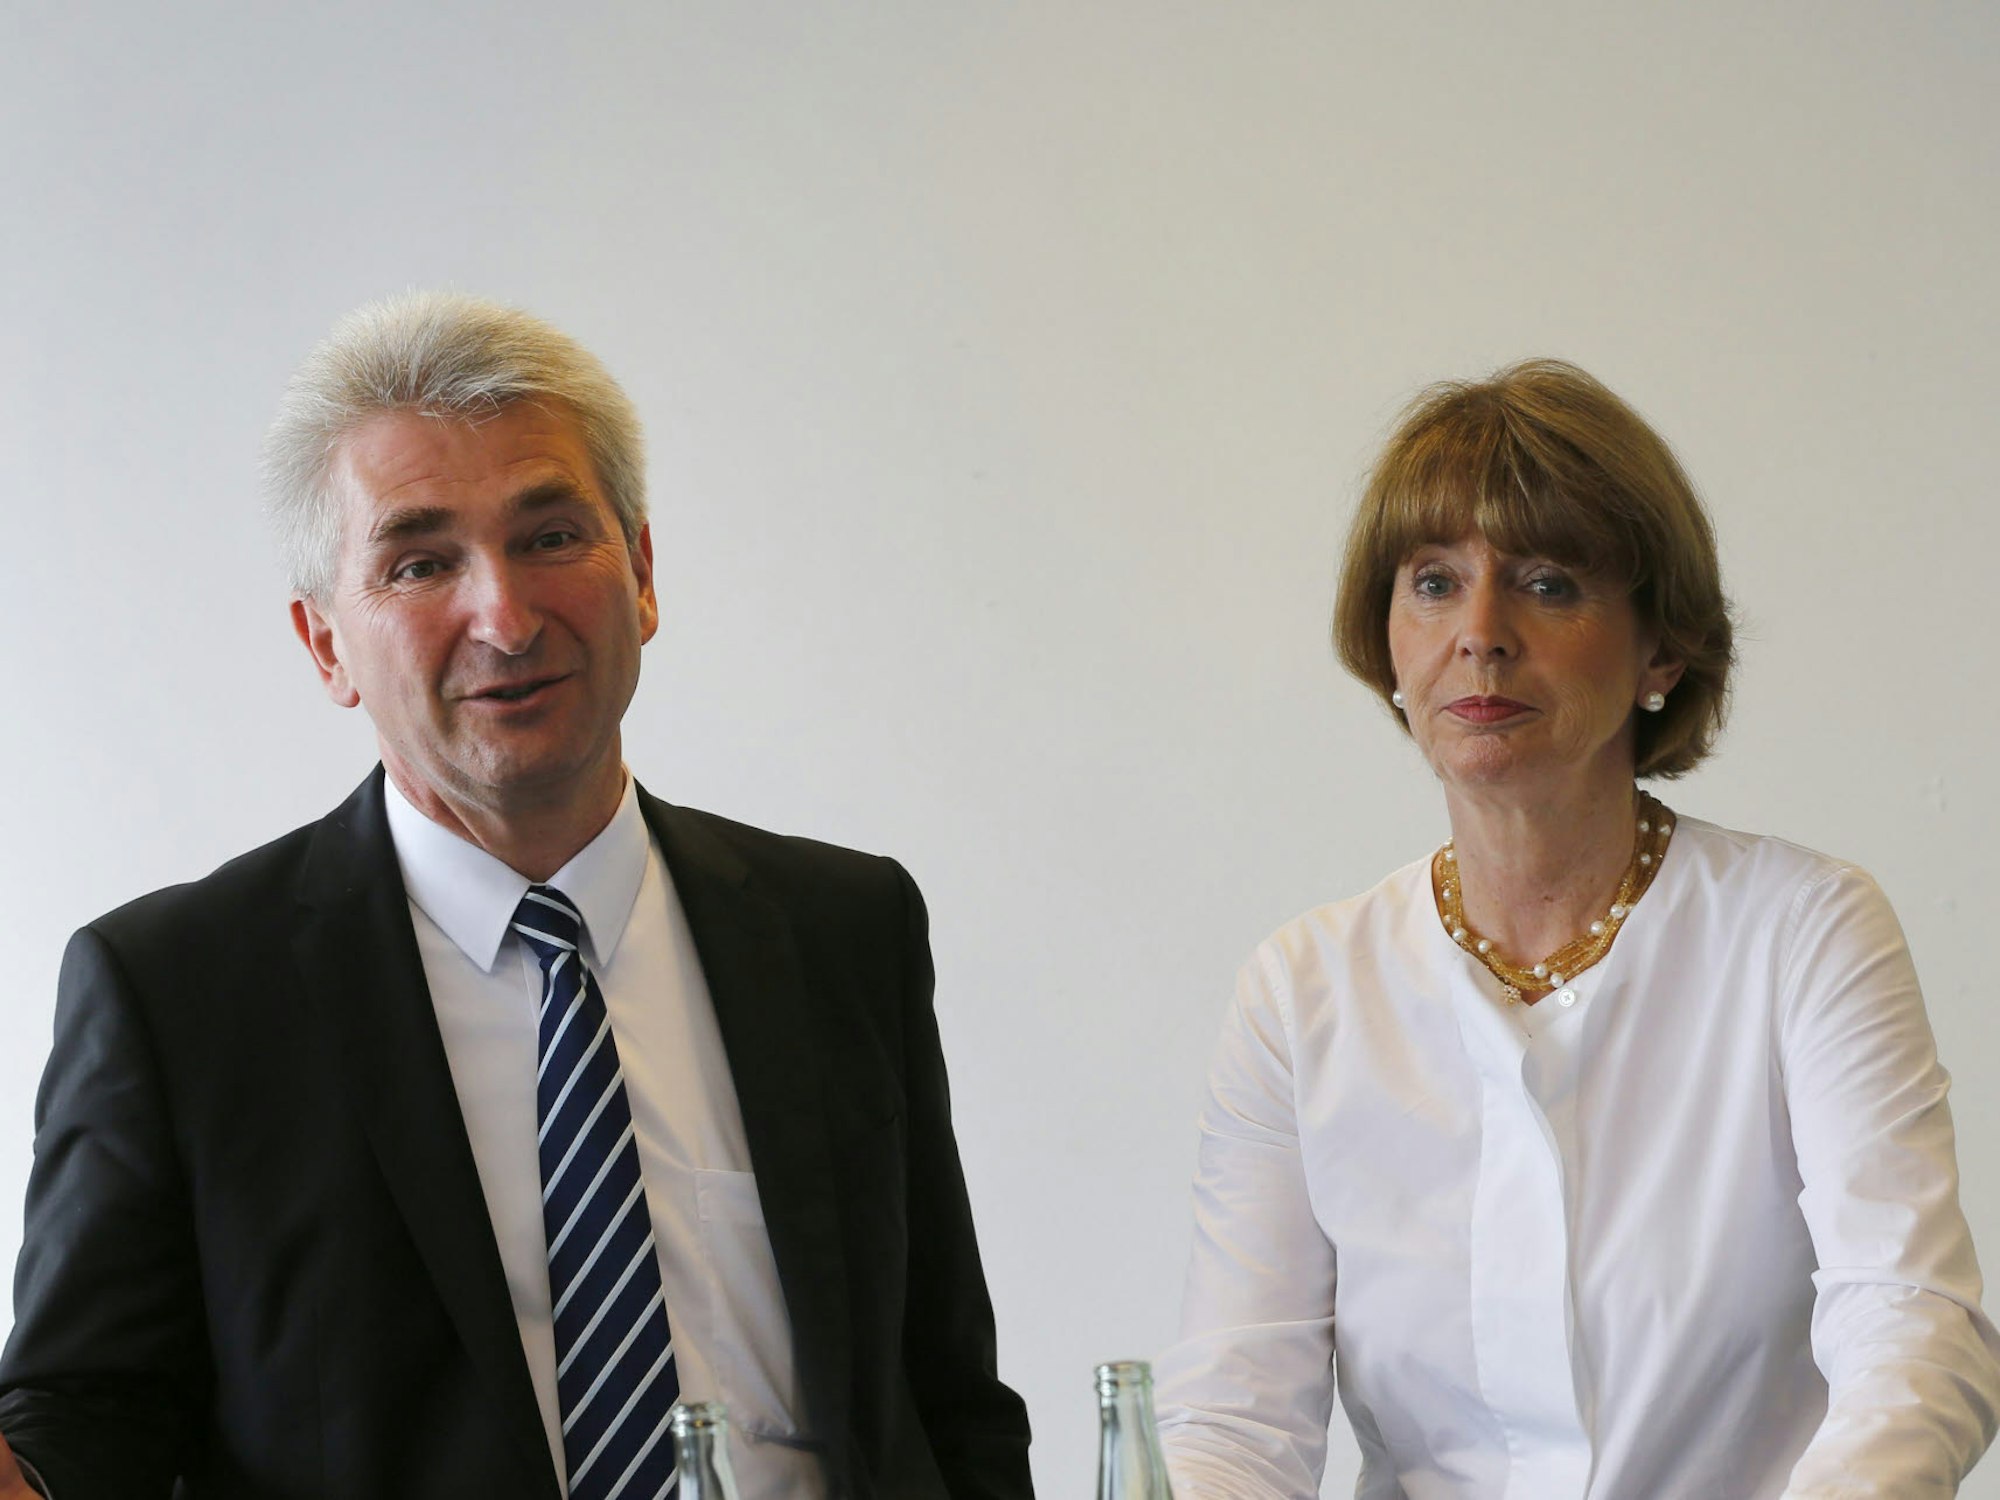 Andreas Pinkwart und Henriette Reker suchten das Gespräch mit Gründern im Mediapark.